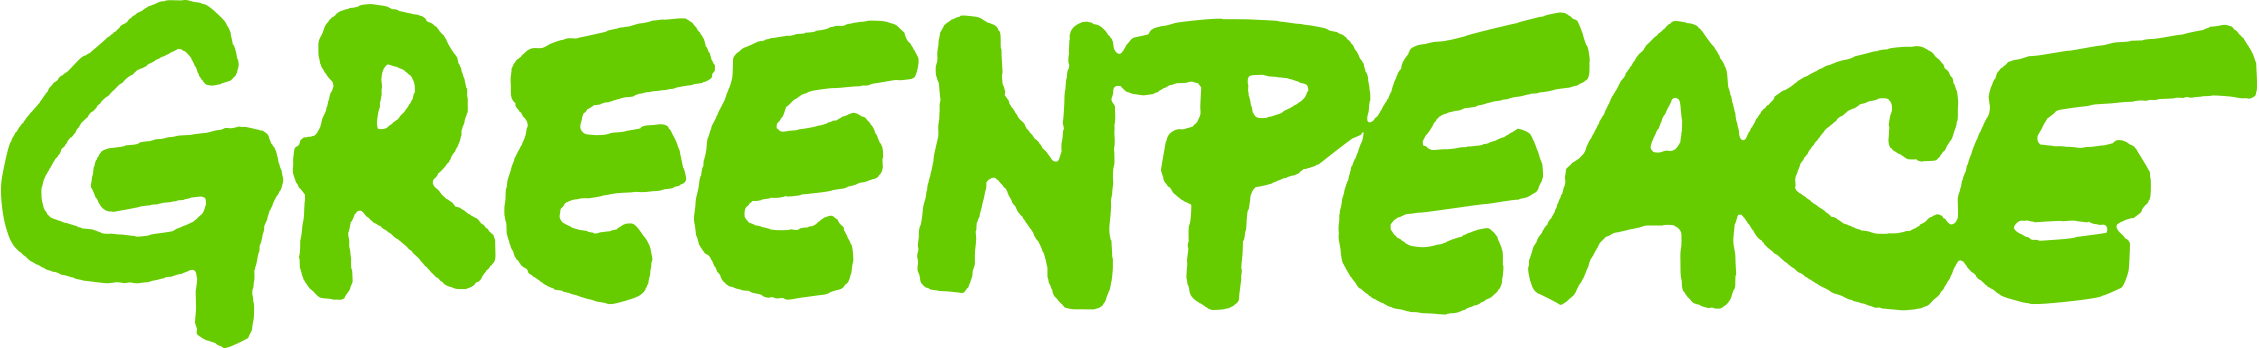 GPAP-Master-Logo-Green-RGB_Web.png